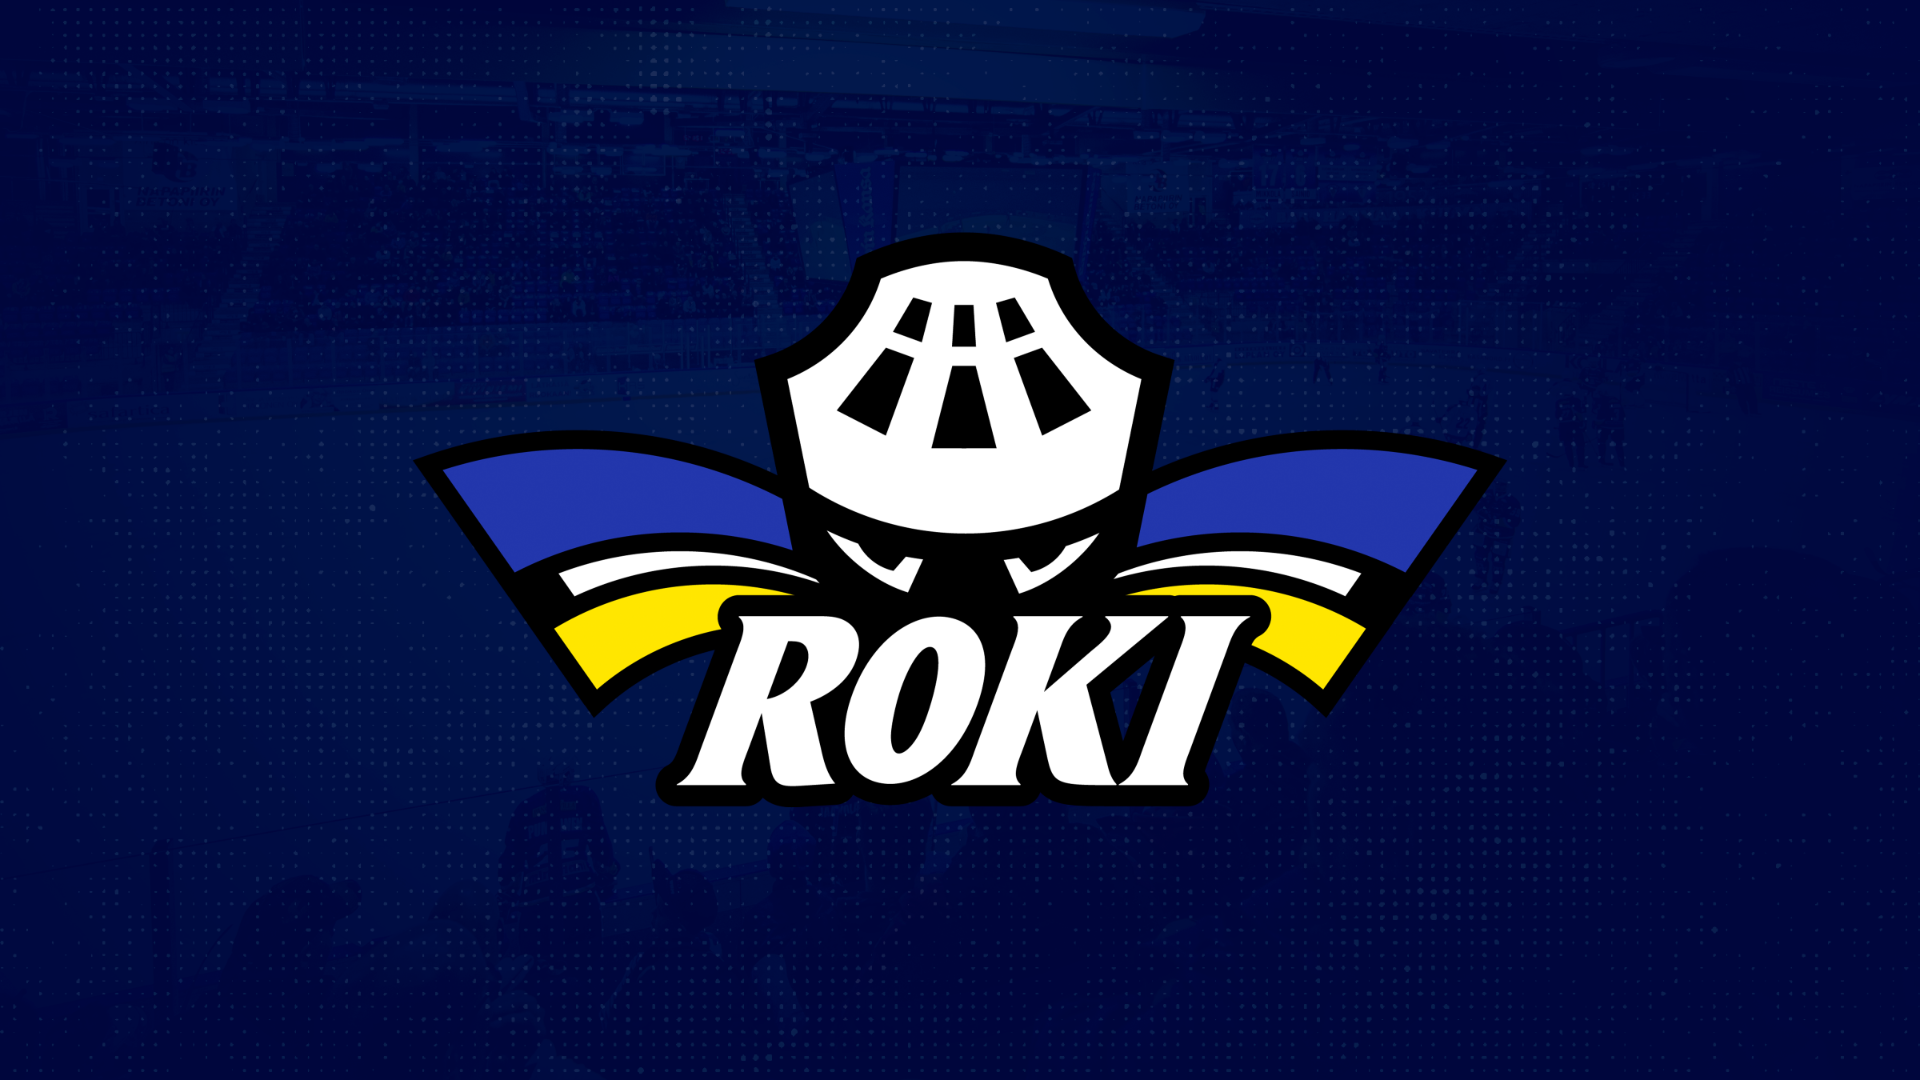 Tiedote: RoKin naisten liigajoukkueessa todettu positiivinen koronatestitulos